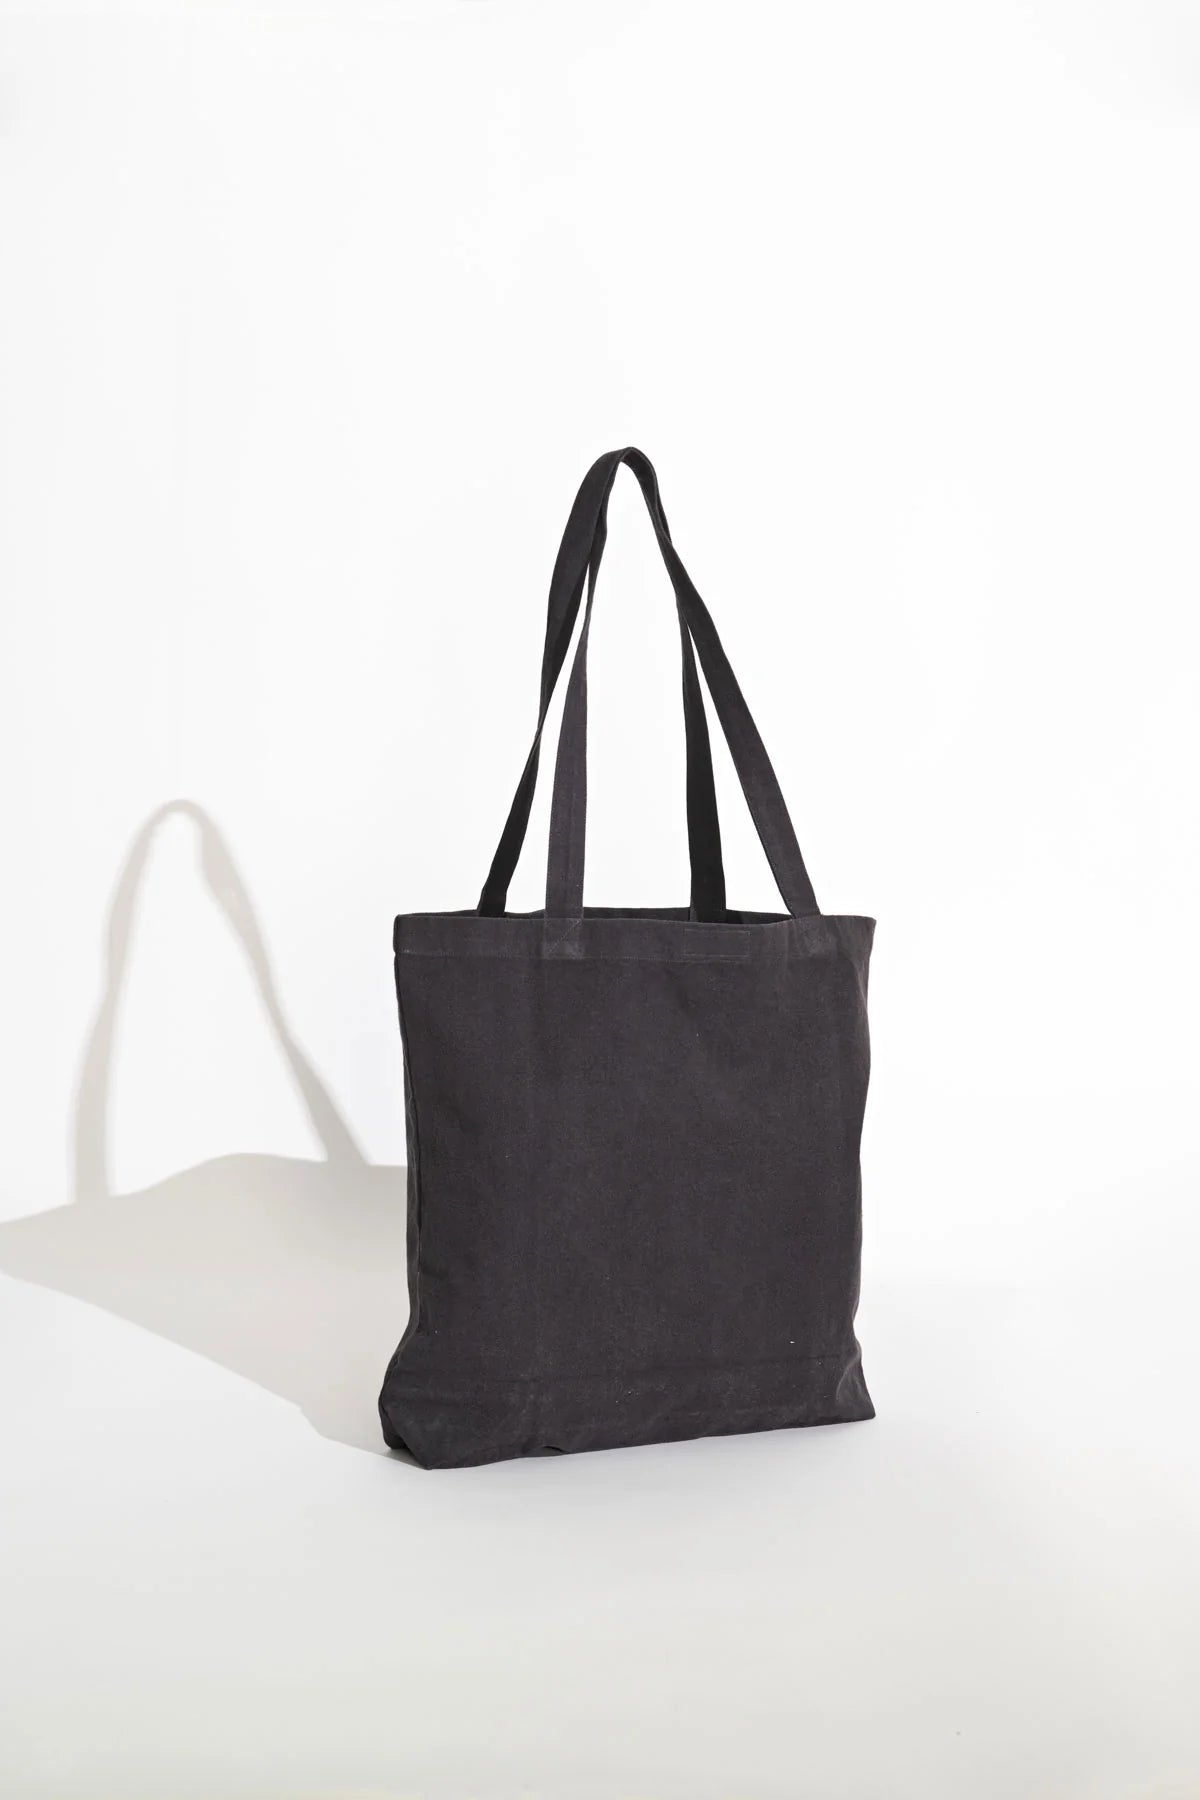 MISFIT // Tender Trouble Tote Bag BLACK